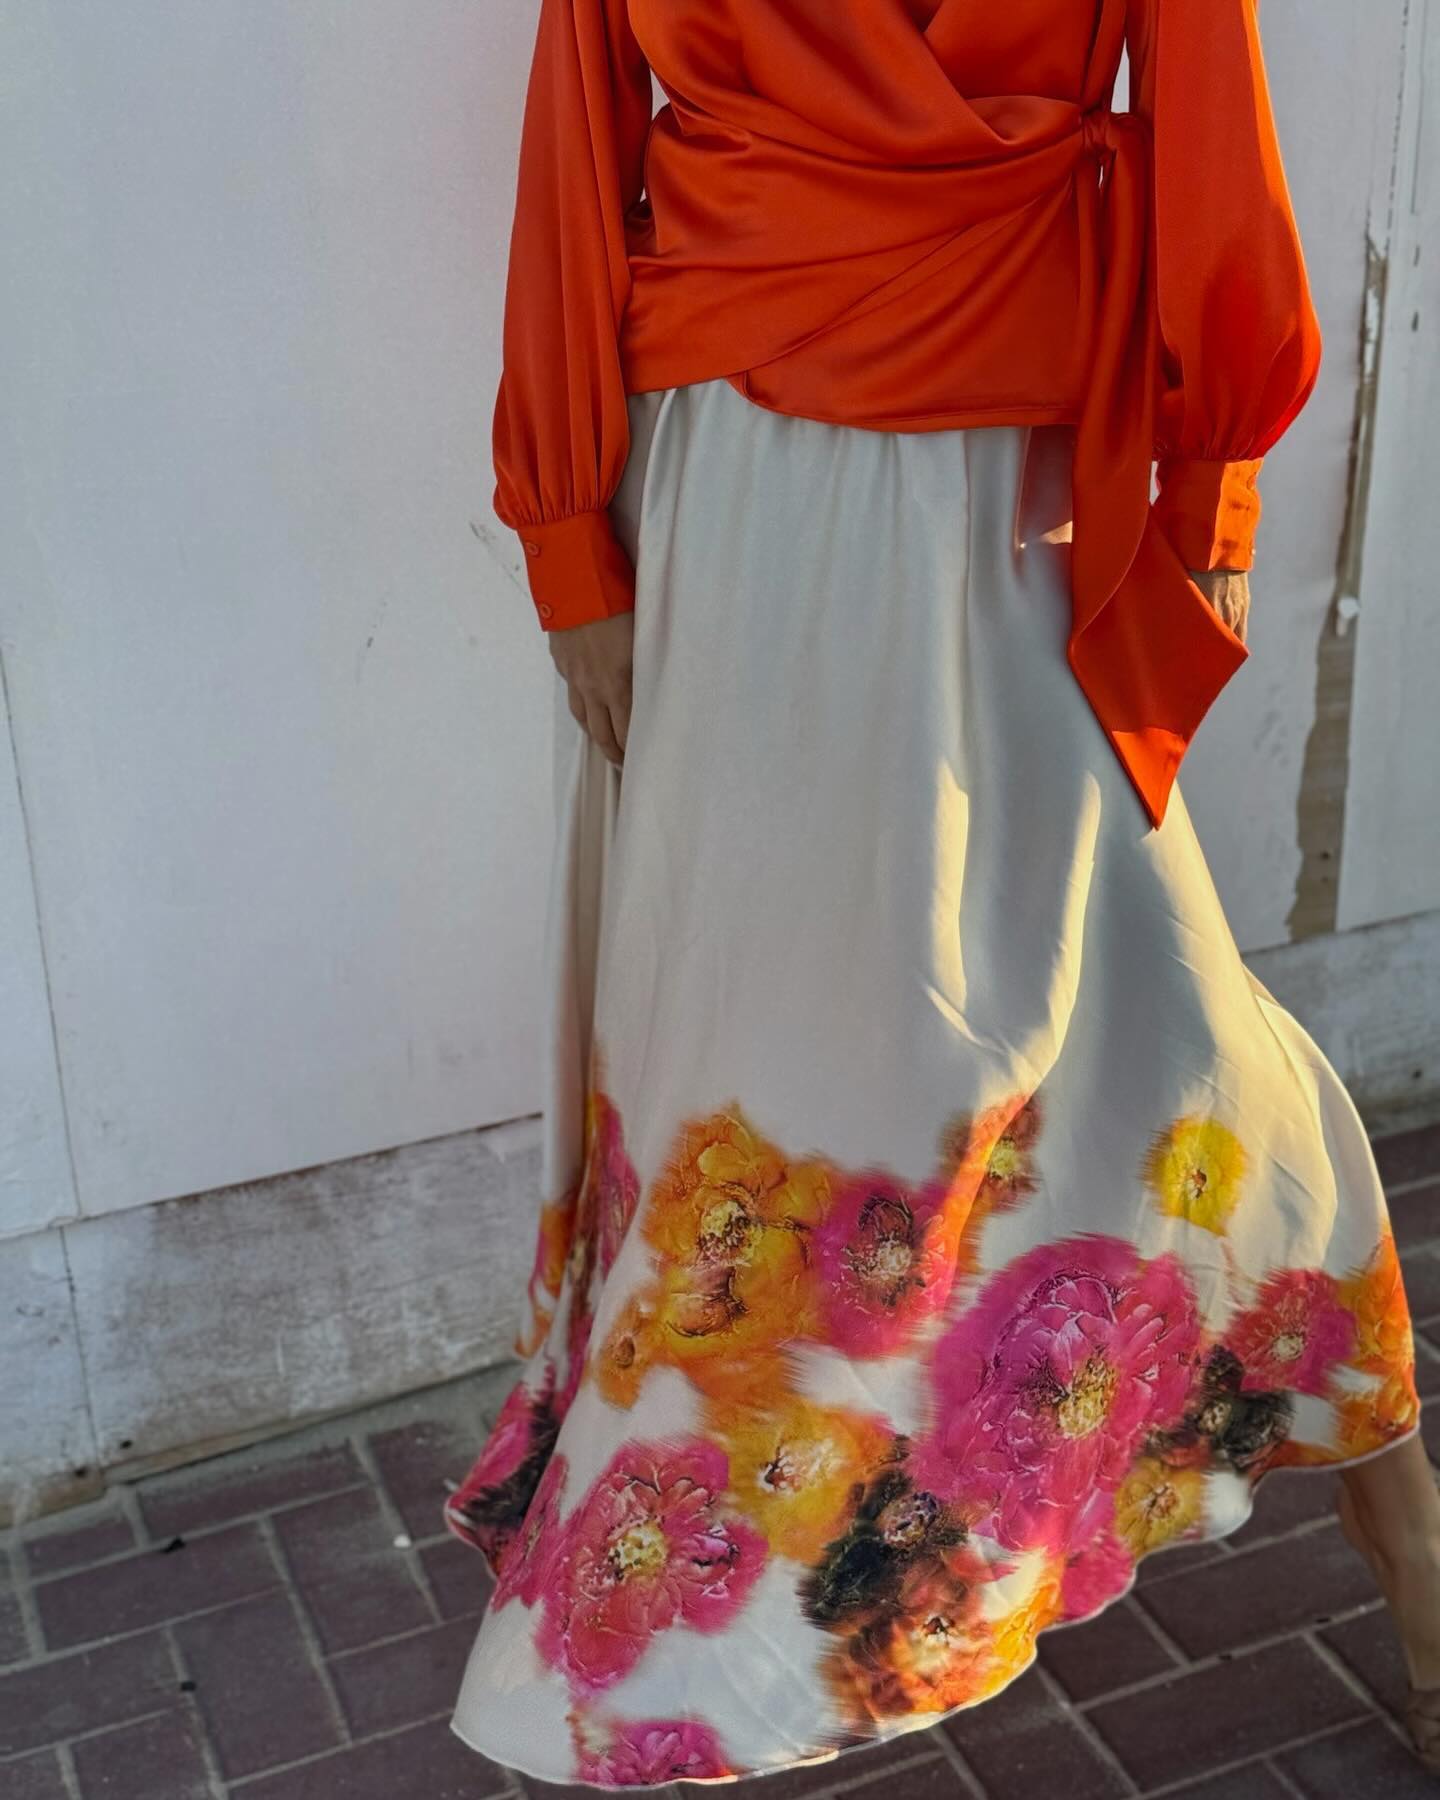 Karmamia Savannah Skirt - Premium Long Skirts from Marina St Barth - Just $288! Shop now at Marina St Barth